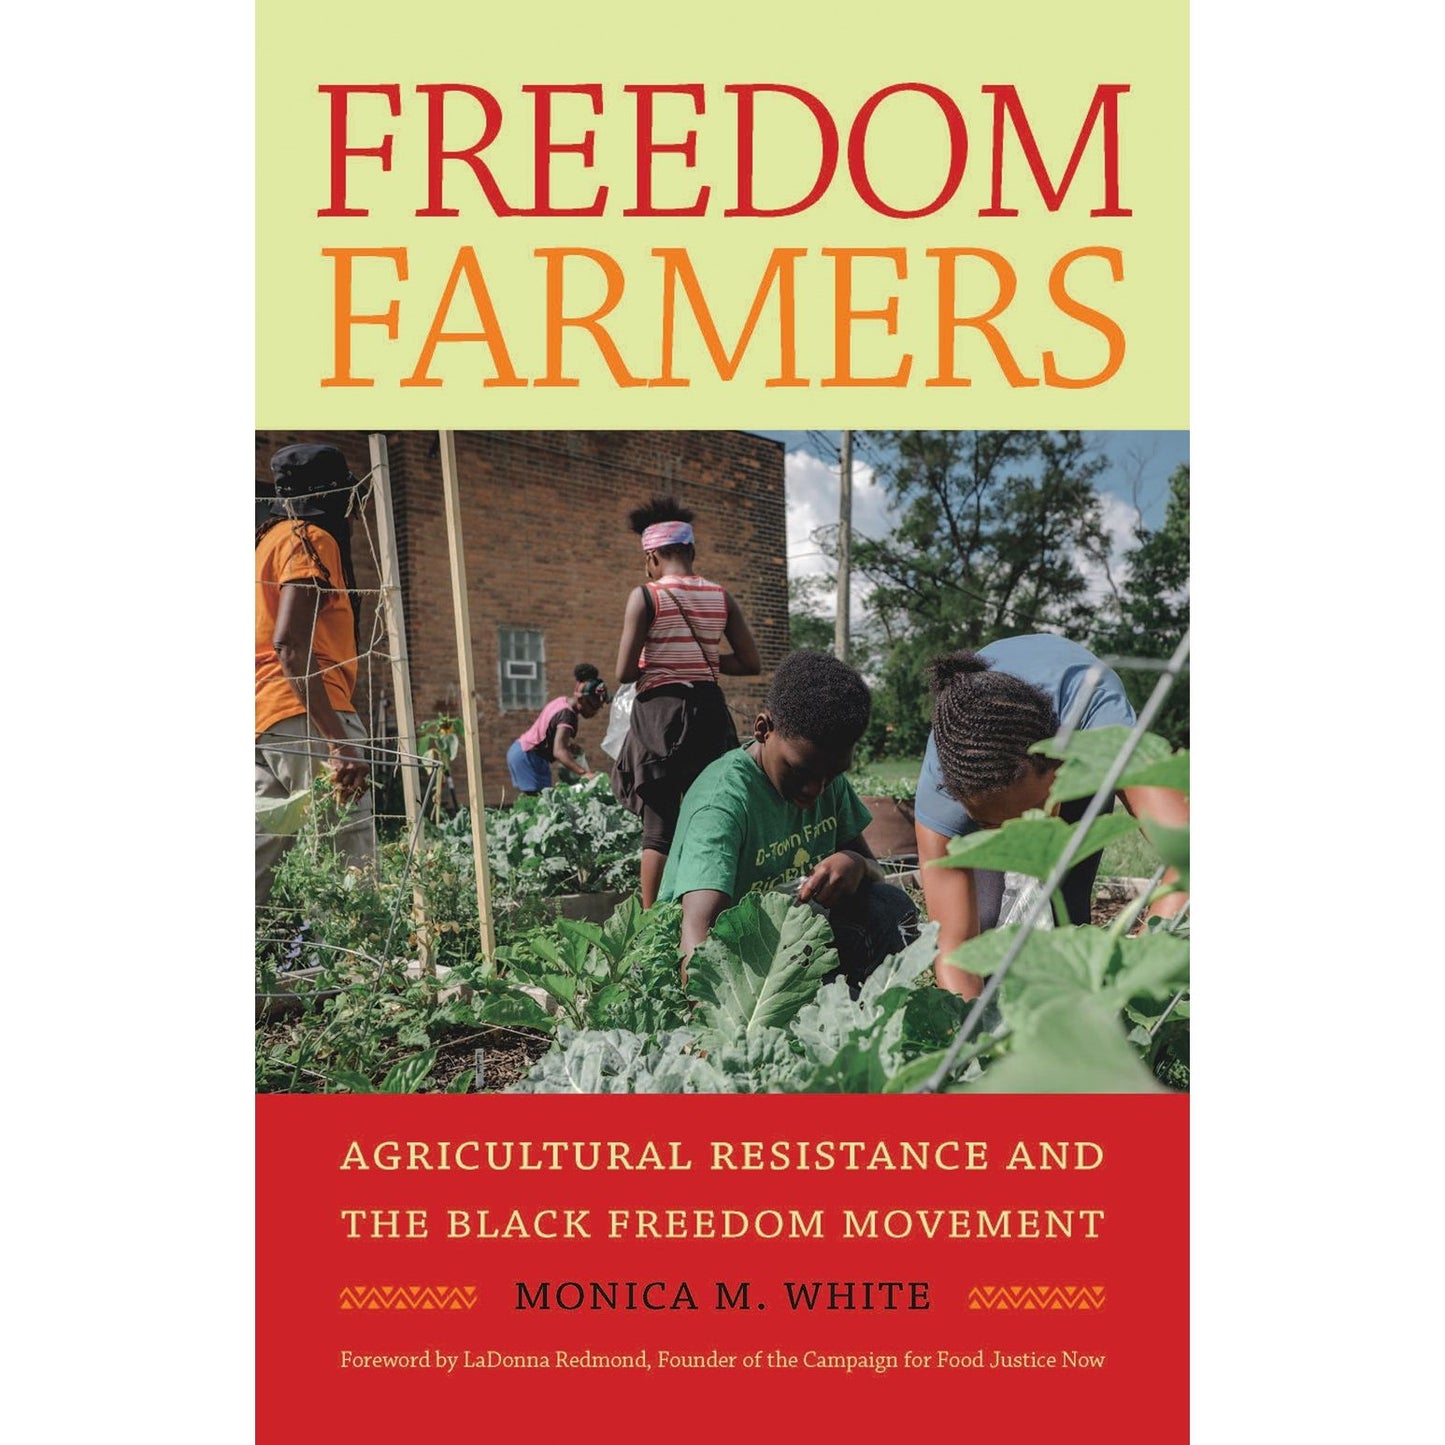 Freedom Farmers (Monica M. White)